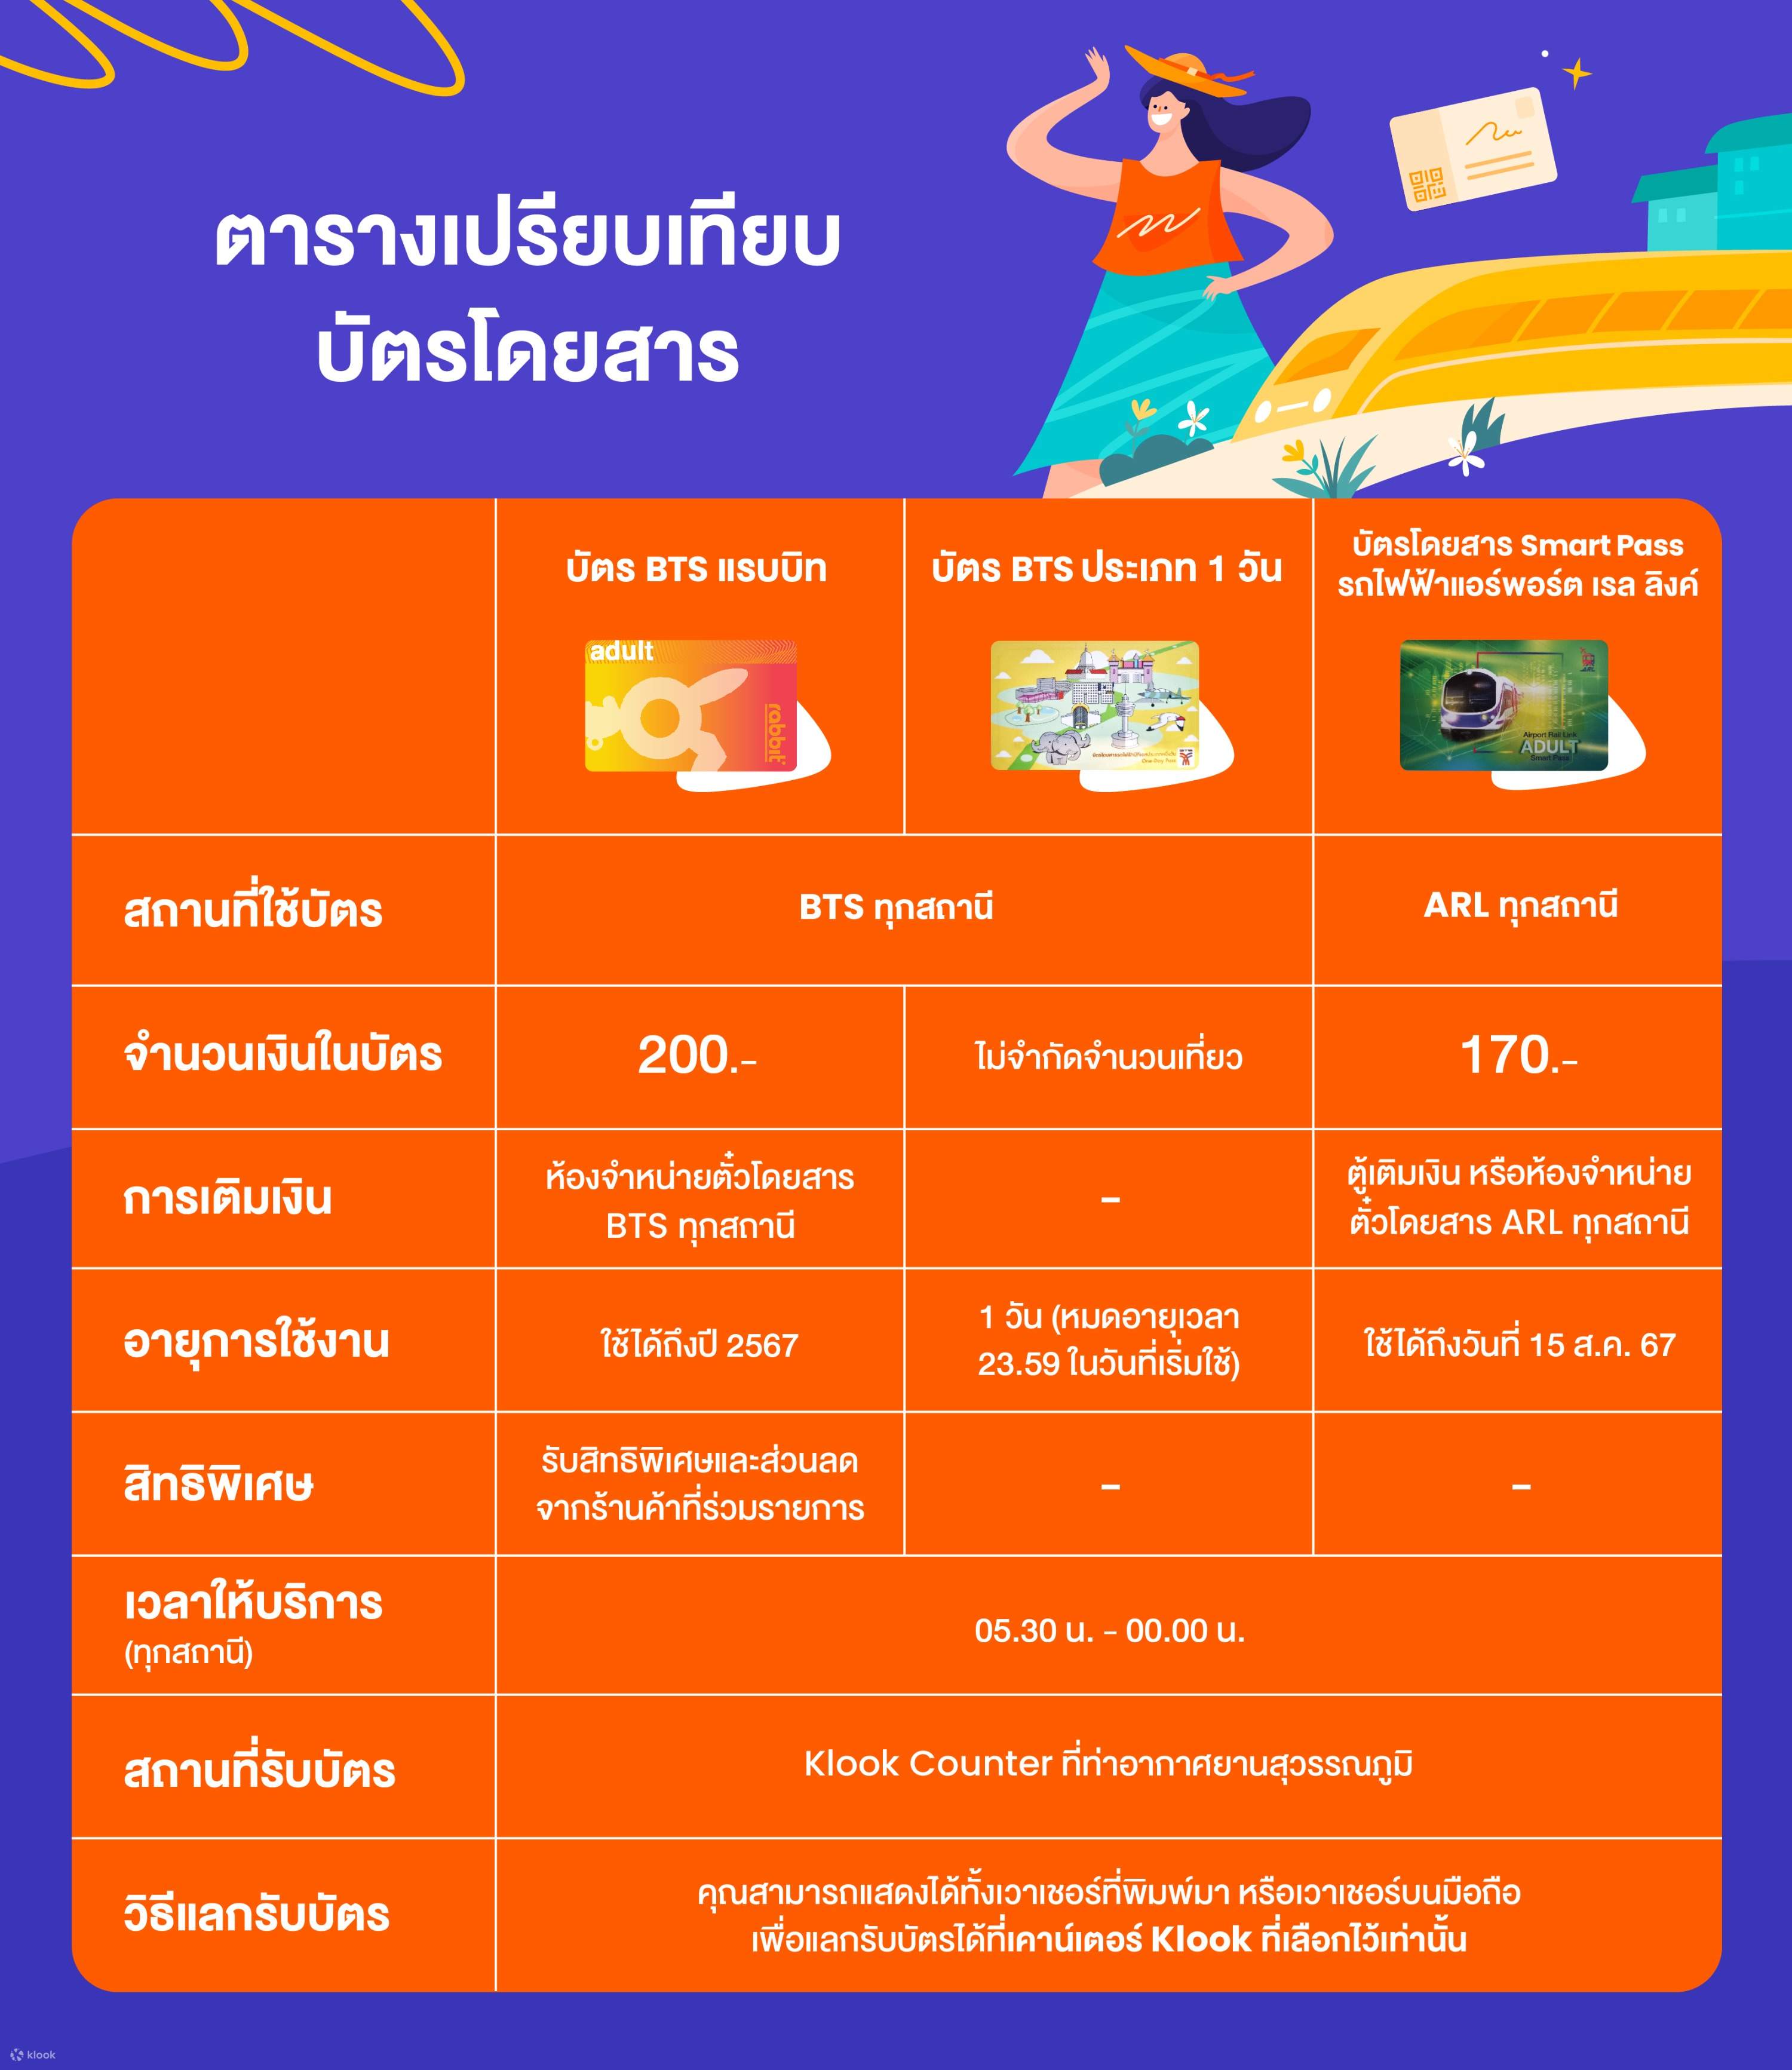 บัตรแรบบิท (Rabbit Card) สำหรับโดยสารรถไฟฟ้าบีทีเอส - Klook ประเทศไทย